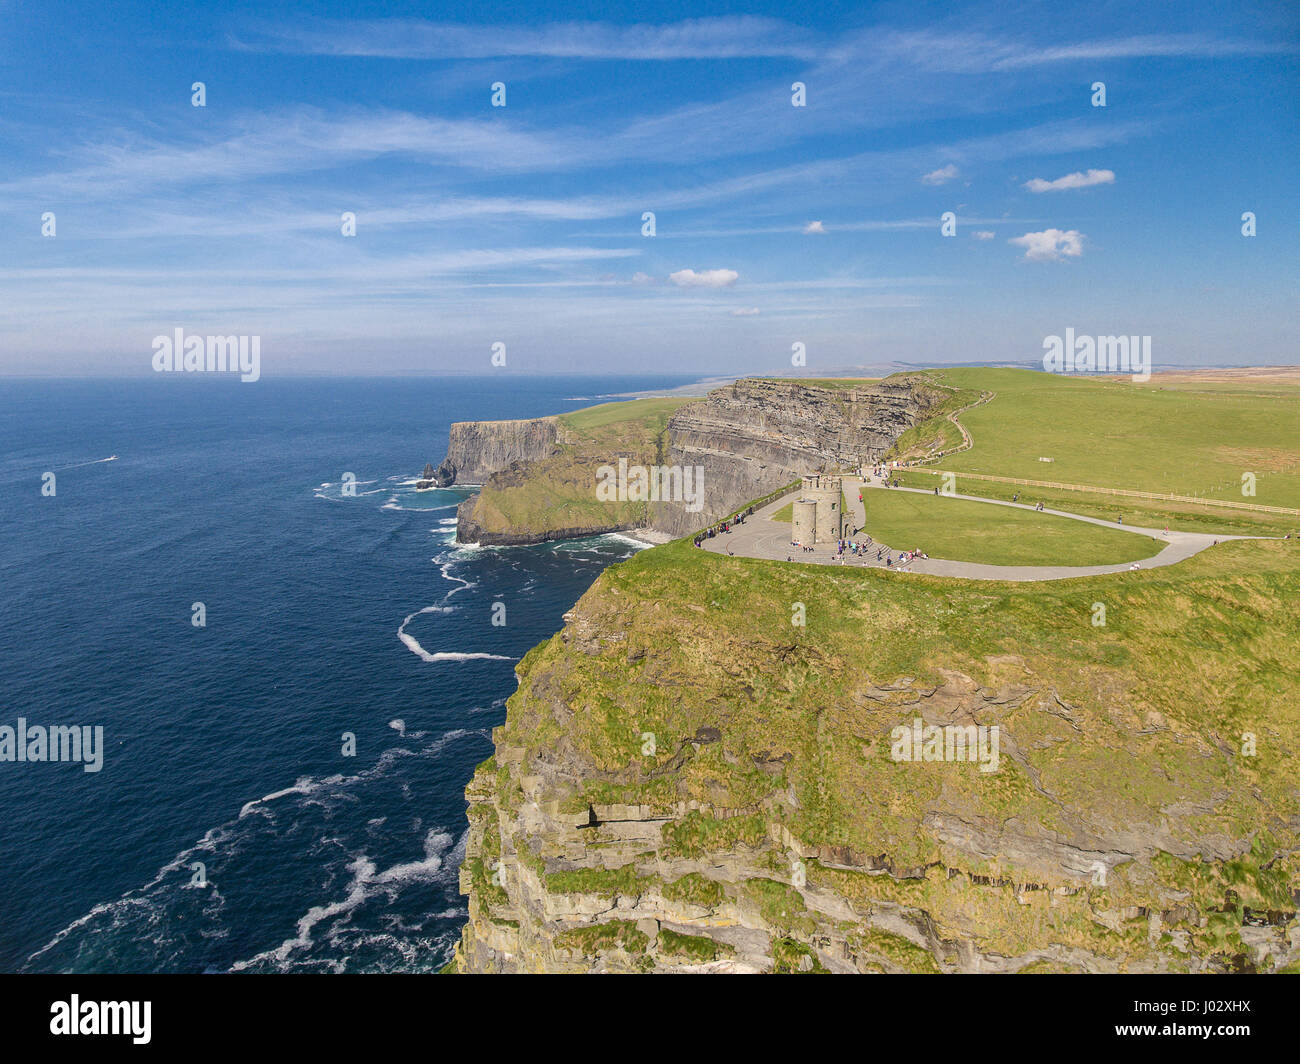 Aerial Irland Landschaft Sehenswürdigkeit in County Clare. Die Klippen von Moher und Burren Irland. Epische irische Landschaft Meereslandschaft entlang die Wild at Stockfoto